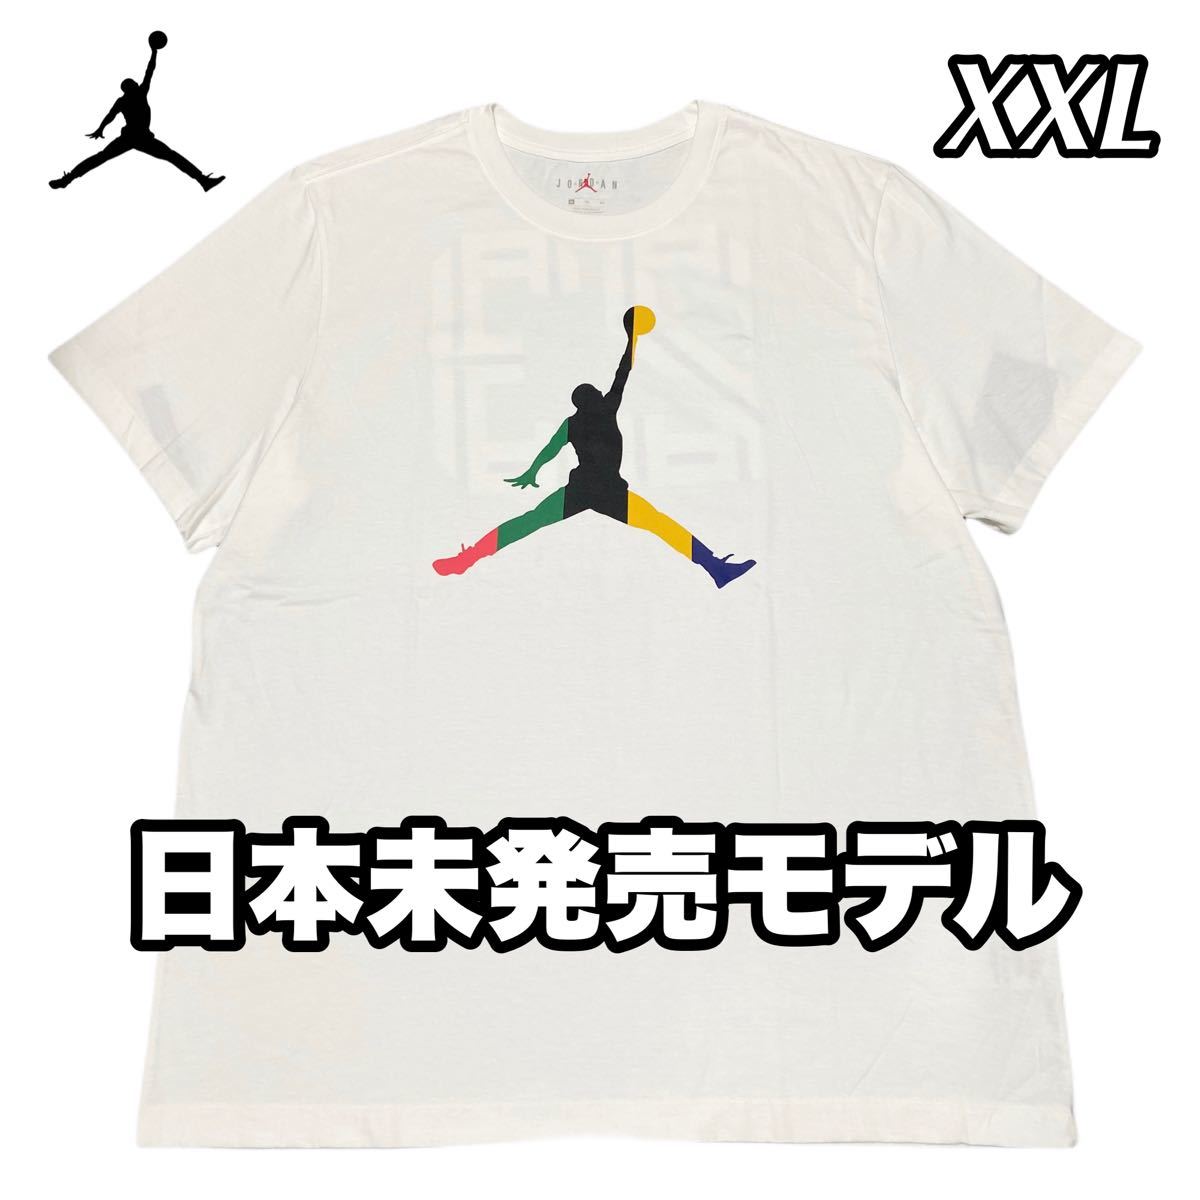 NIKE ナイキ ジャンプマンロゴ エアジョーダン Tシャツ マルチカラー 23ナンバリング ホワイト 日本未発売